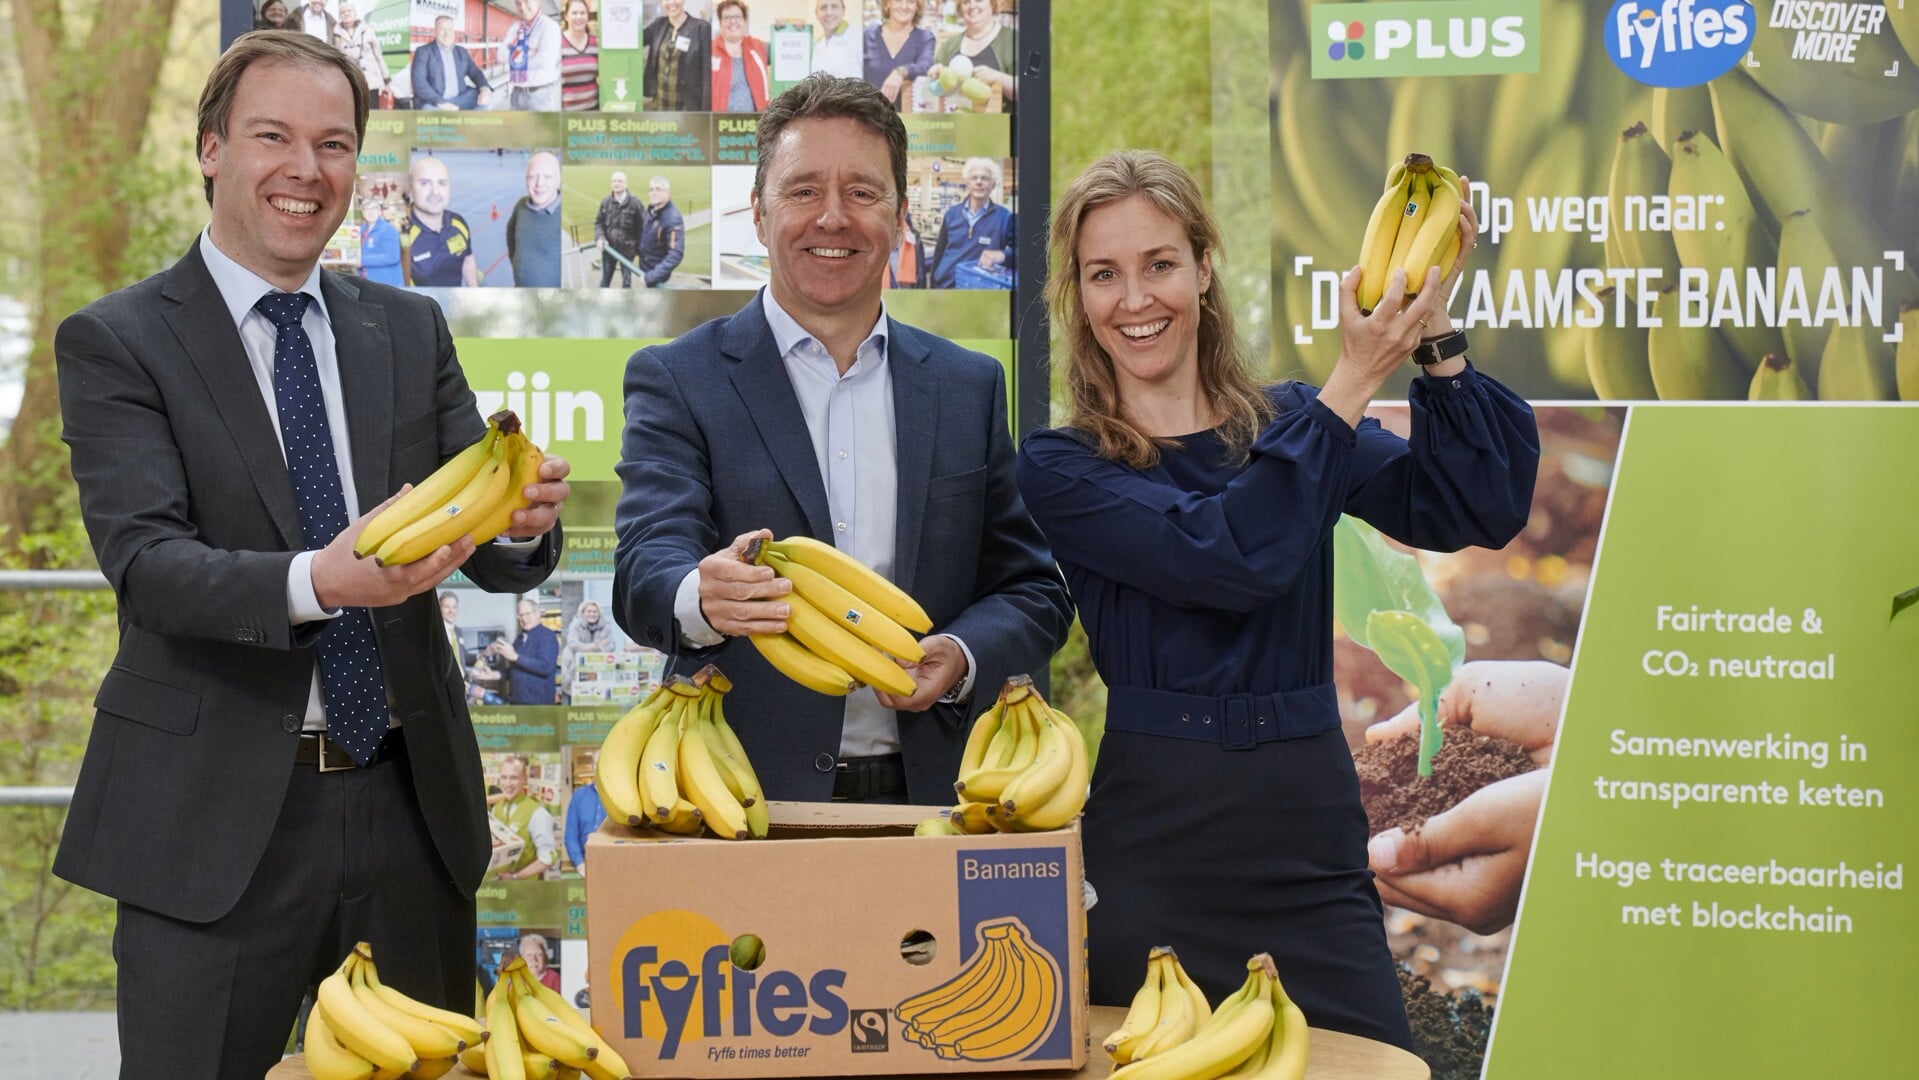 We zien hier (v.l.n.r). Joris Schonk, commercieel directeur van bananenleverancier Fyffes, Eric Leebeek, commercieel directeur Plus, en Leontien Hasselman-Plugge, (destijds) ceo van technologiebedrijf, SIM, opgegaan in het bedrijf ImpactBuying. De drie partijen maakten in 2019 de komst van de ‘duurzaamste banaan’ bekend. Plus verkocht sinds 2010 al als enige supermarkt in Nederland alleen Fairtrade-gecertificeerde bananen. Sinds 2019 zijn deze bananen ook klimaatneutraal en volledig traceerbaar, middels een blockchaintechnologie; via een QR-code op de banaan zien consumenten welke route de bananen afleggen van plantage tot winkelmandje. Questionmark roemt de inspanningen van Plus op Fairtrade-gebied, alleen is het Fairtrade-keurmerk geen Topkeurmerk op het vlak van klimaat en natuur. Deze inspanningen zijn daarom in het onderzoek niet meegenomen.